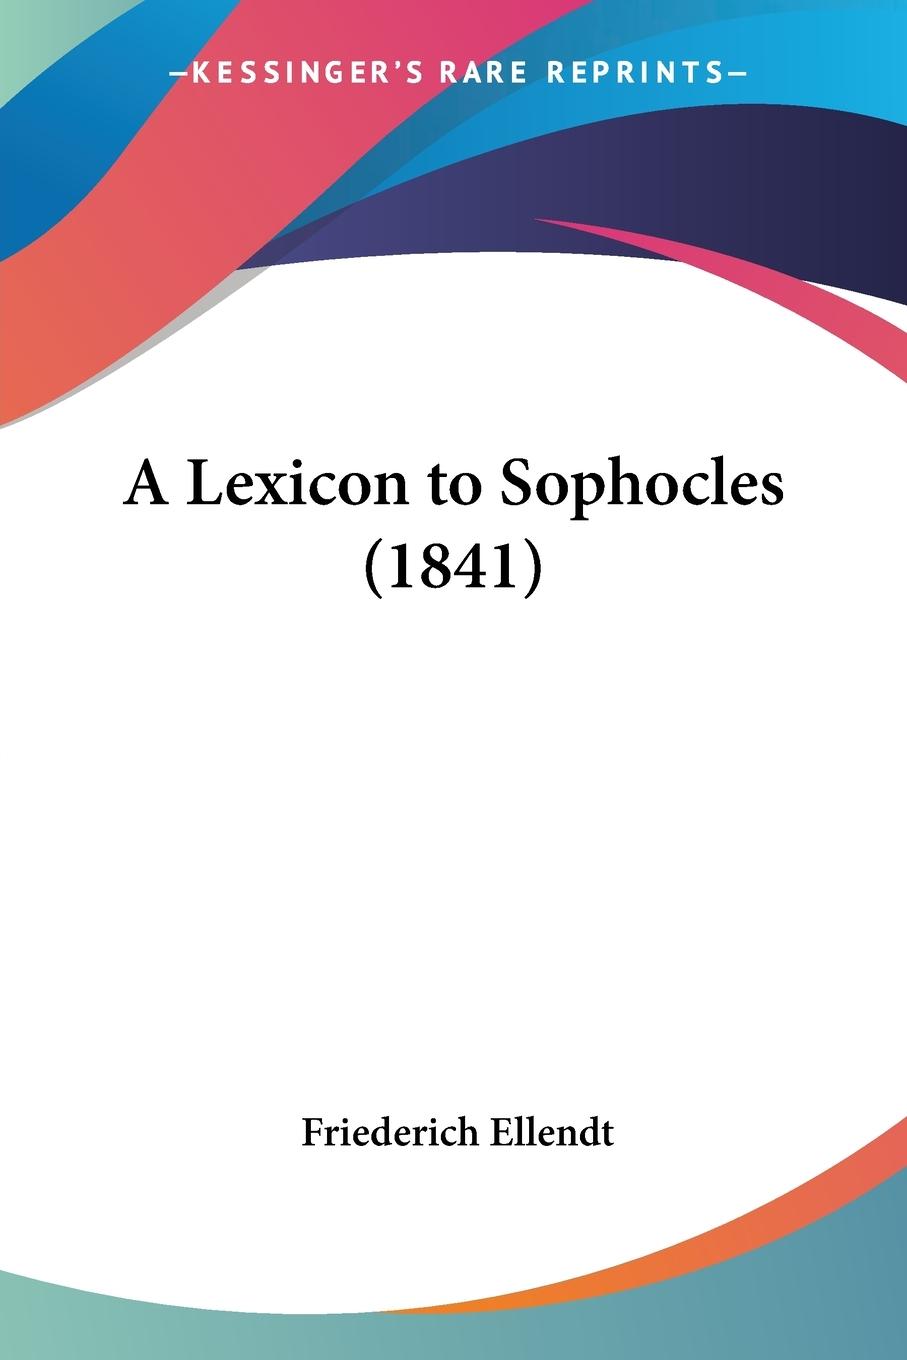 A Lexicon to Sophocles (1841) - Ellendt, Friederich